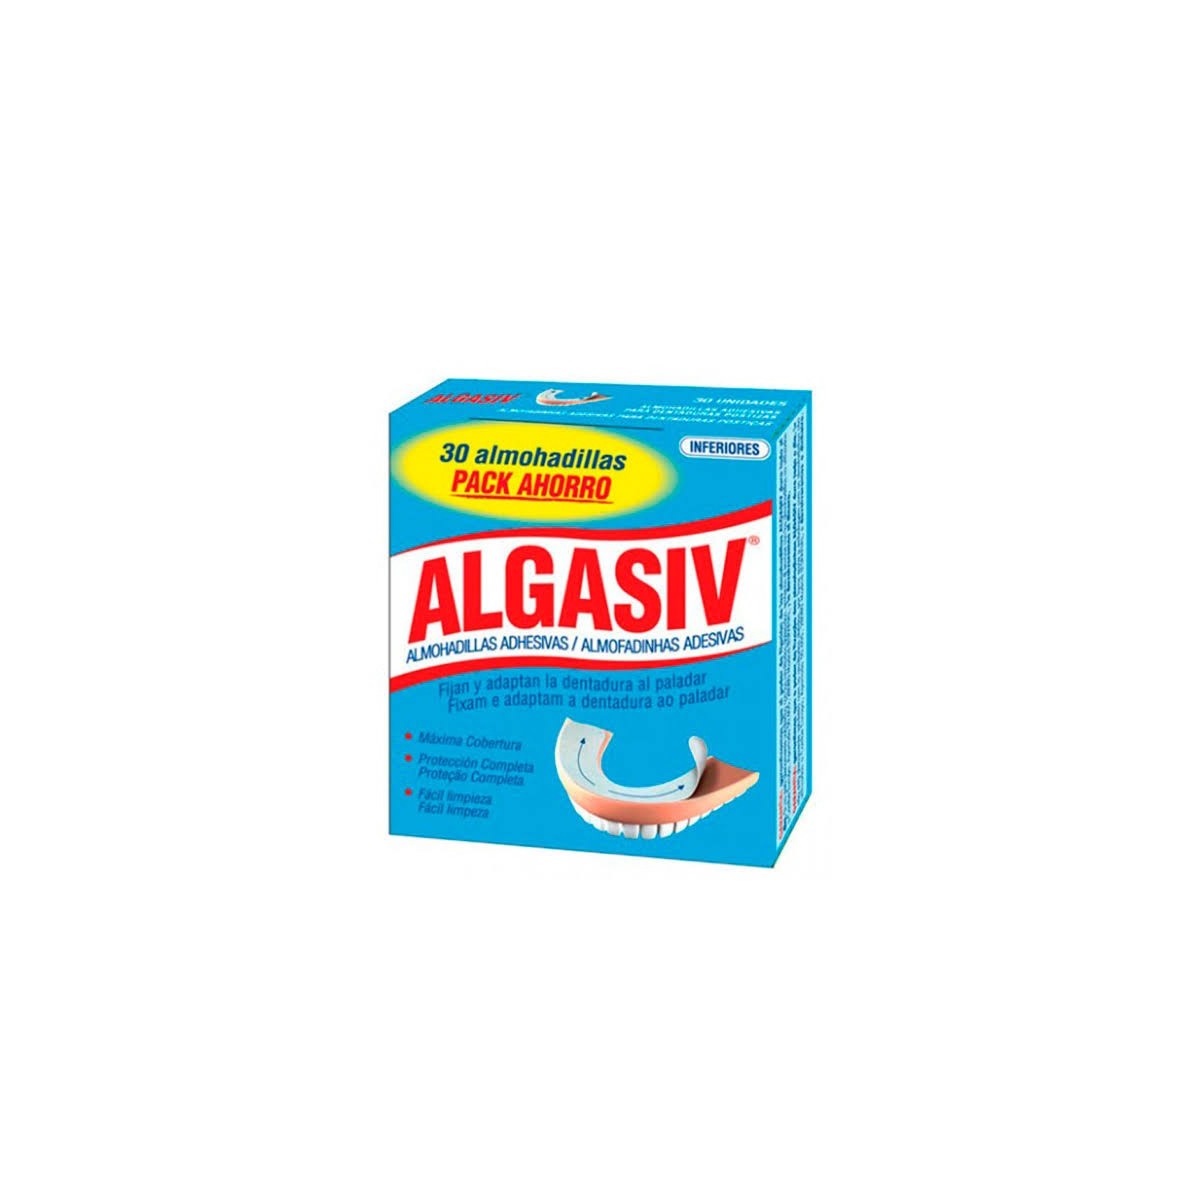 algasiv-inferior-30-almohadillas-adhesivas